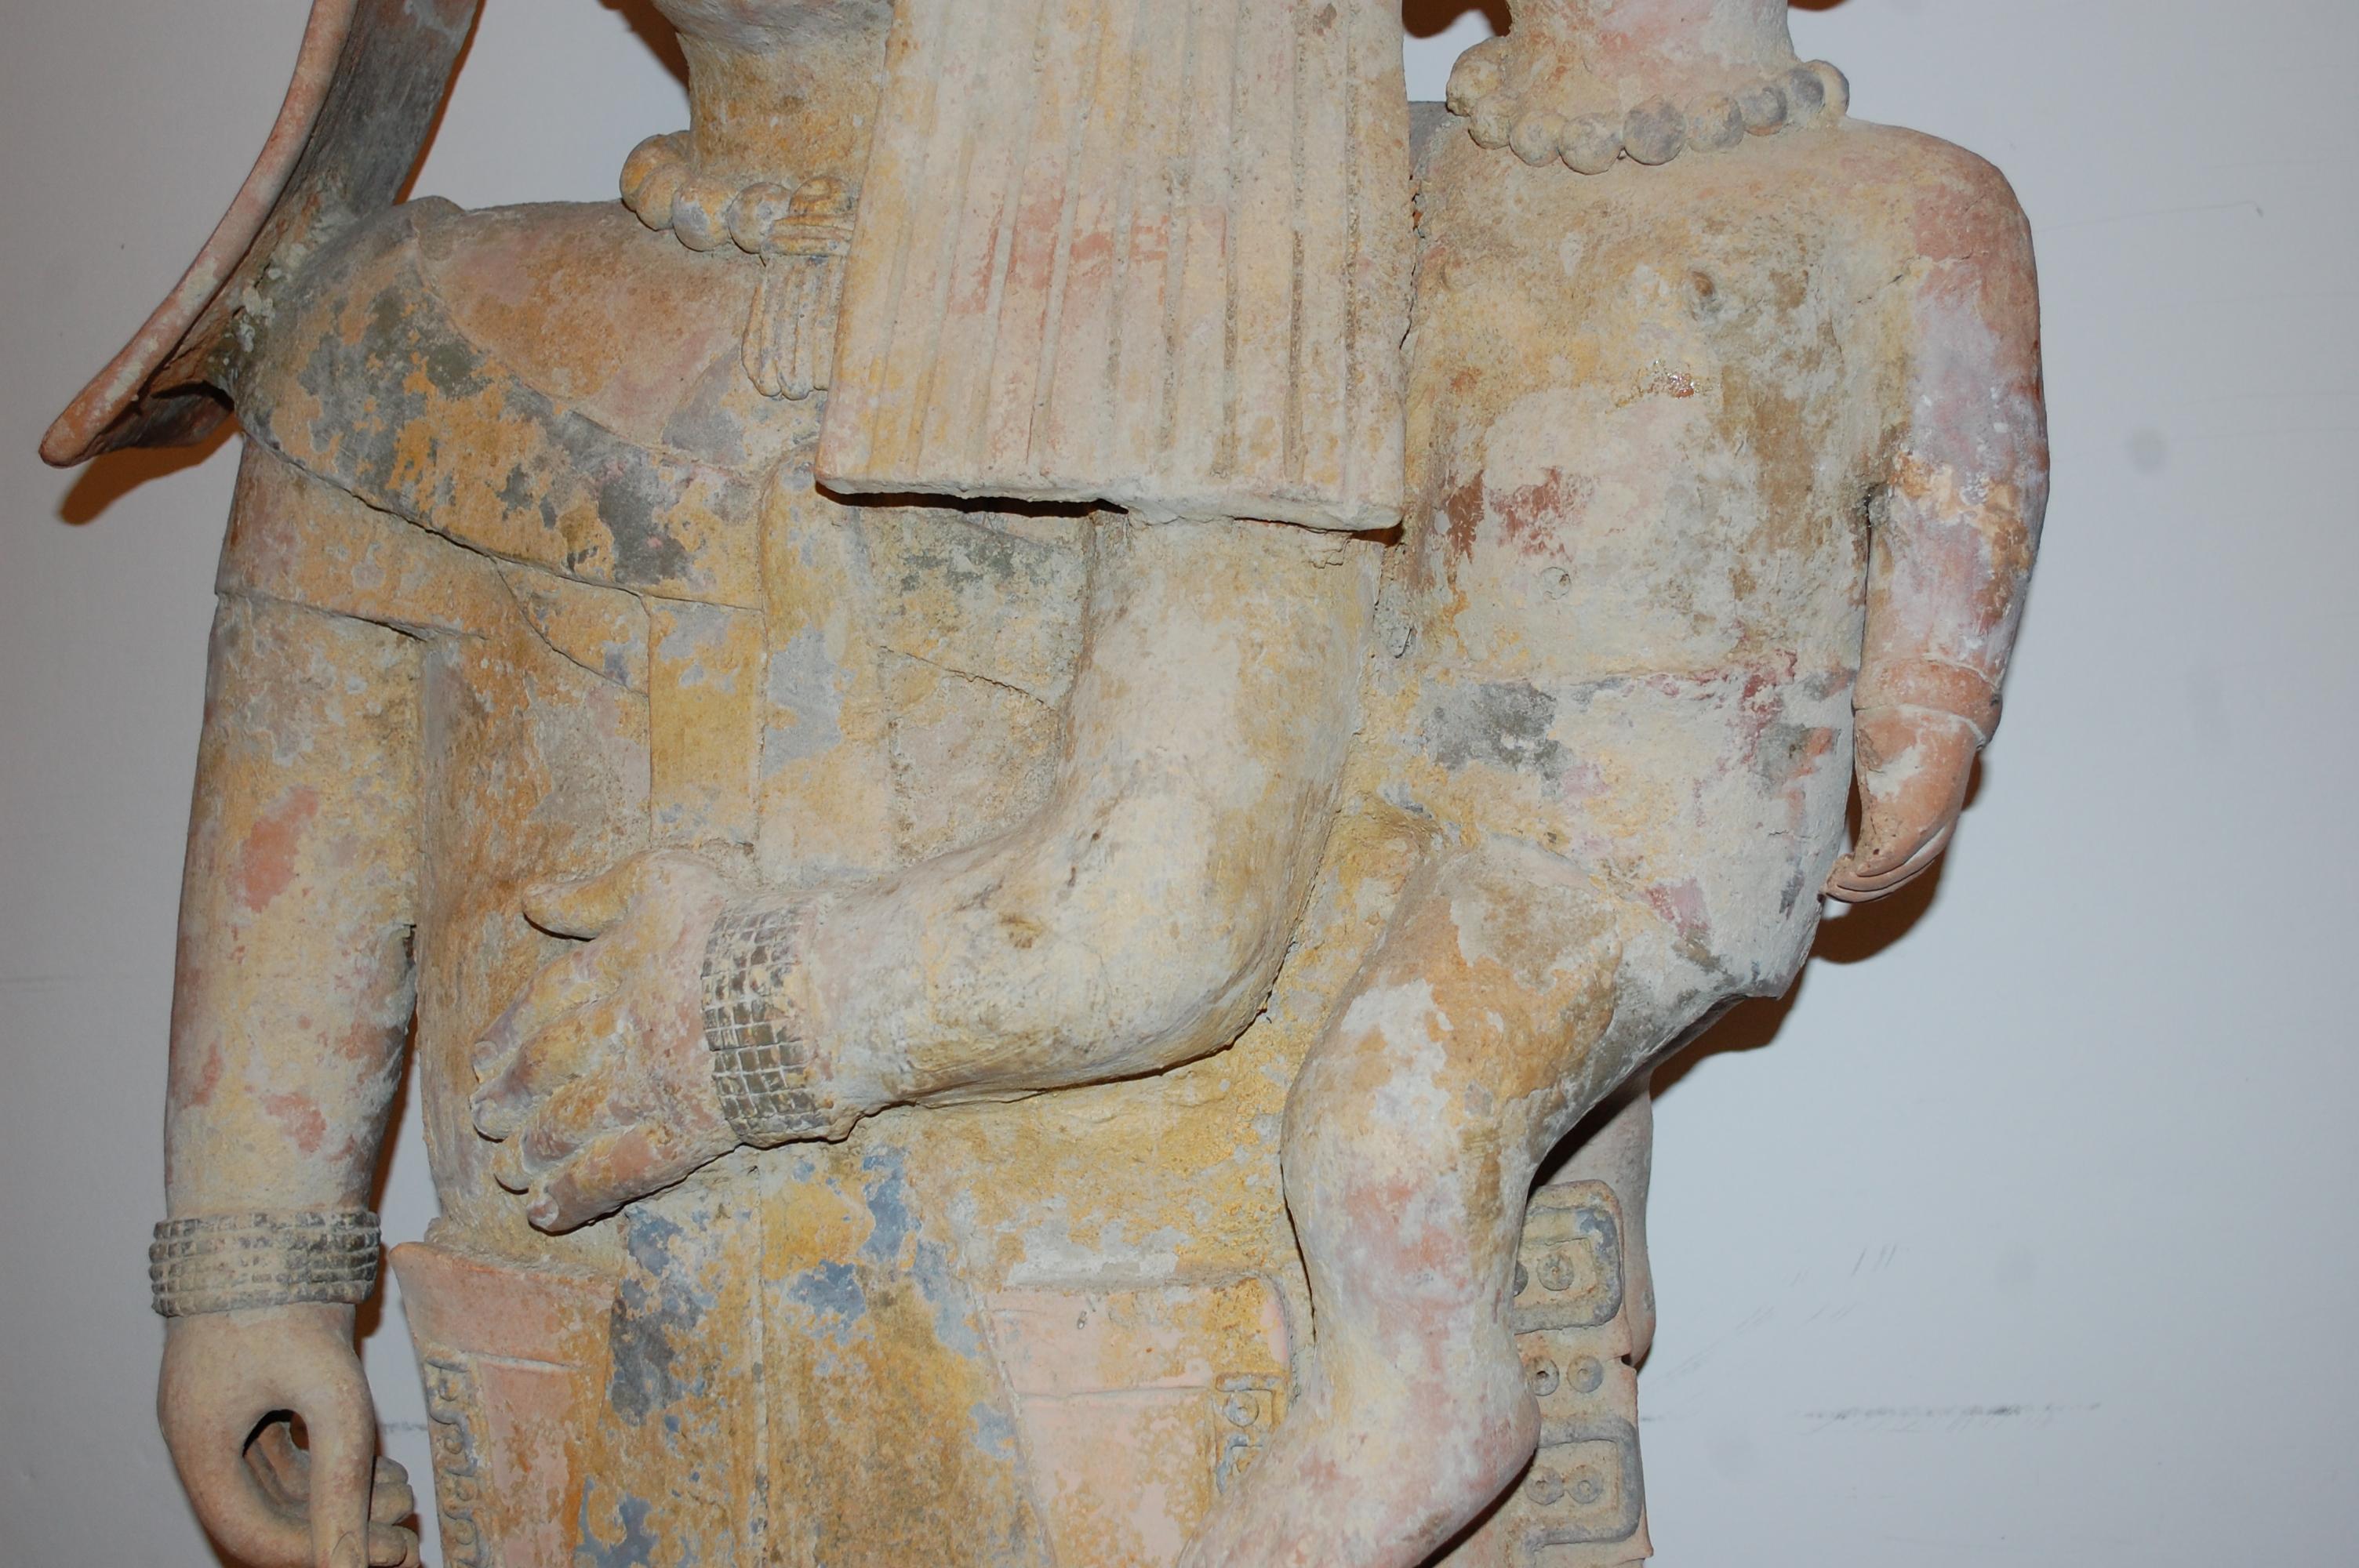  Mutter hält Baby, große Skulptur aus Terrakotta und Ton.
Moderne Pre-Columbian-Stil große Skulptur Auflage 1/30, Künstler signiert. 
Walter Bastianetto ist ein in Italien geborener Bildhauer, der in den 1970er Jahren nach Mexiko zog und sich dort